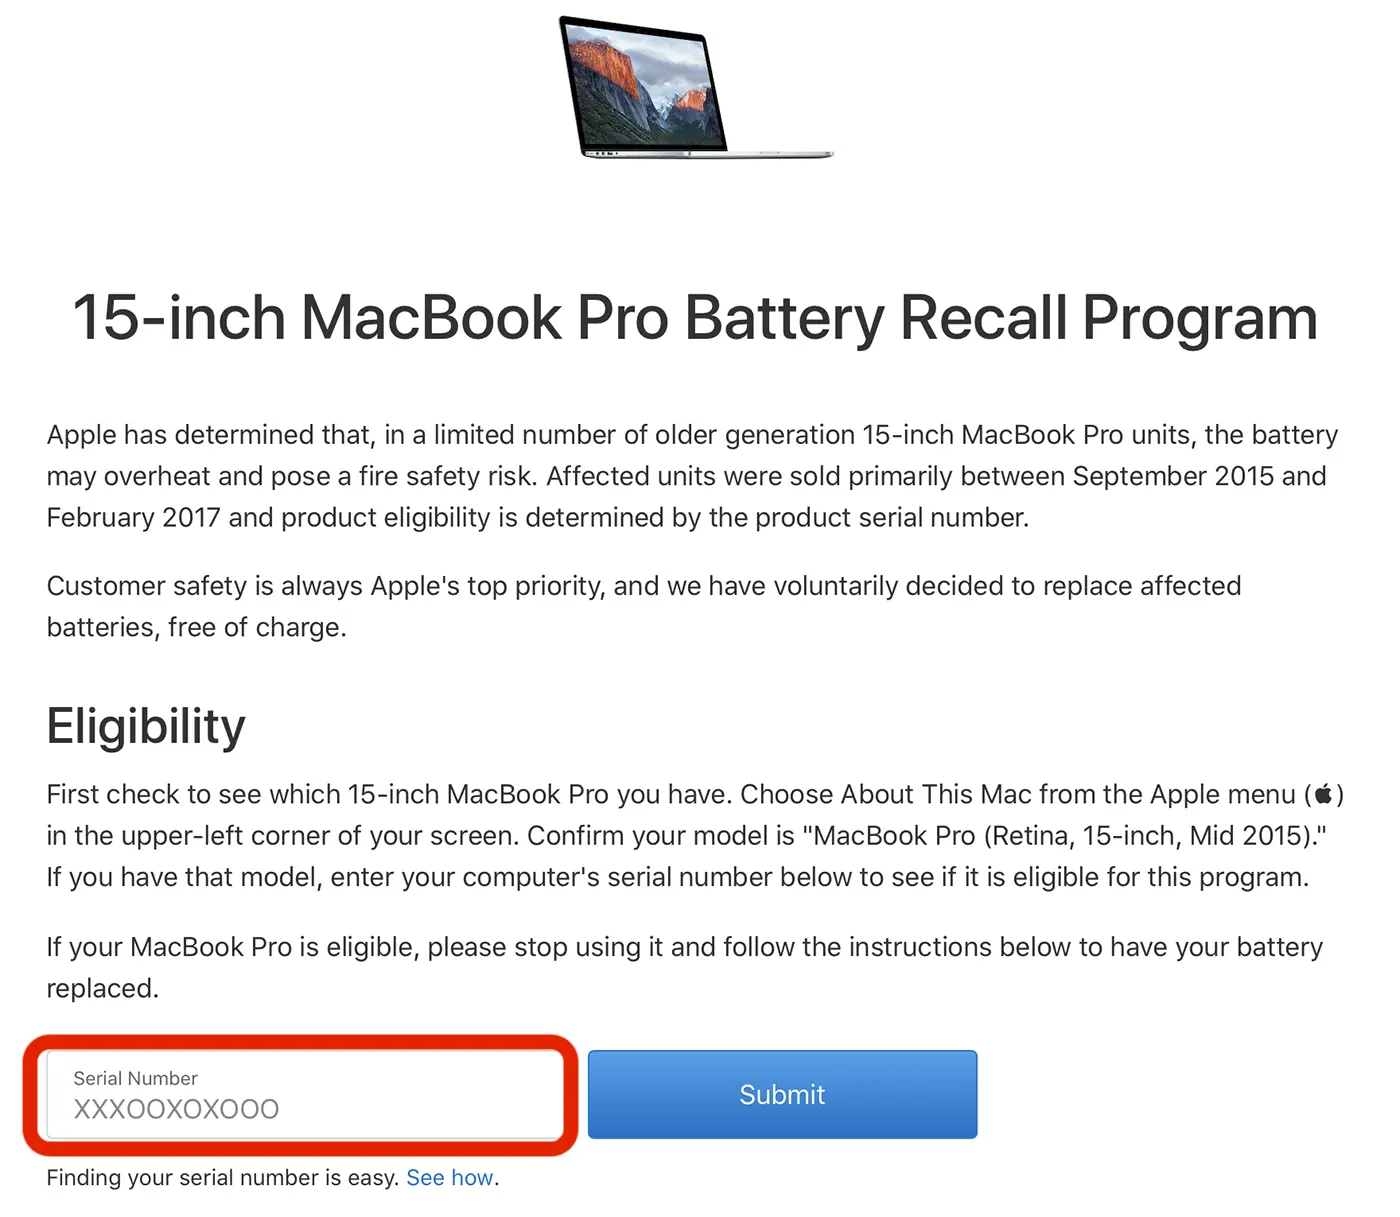 Bateriju svog MacBooka možete besplatno promijeniti. Pogledajte uvjete